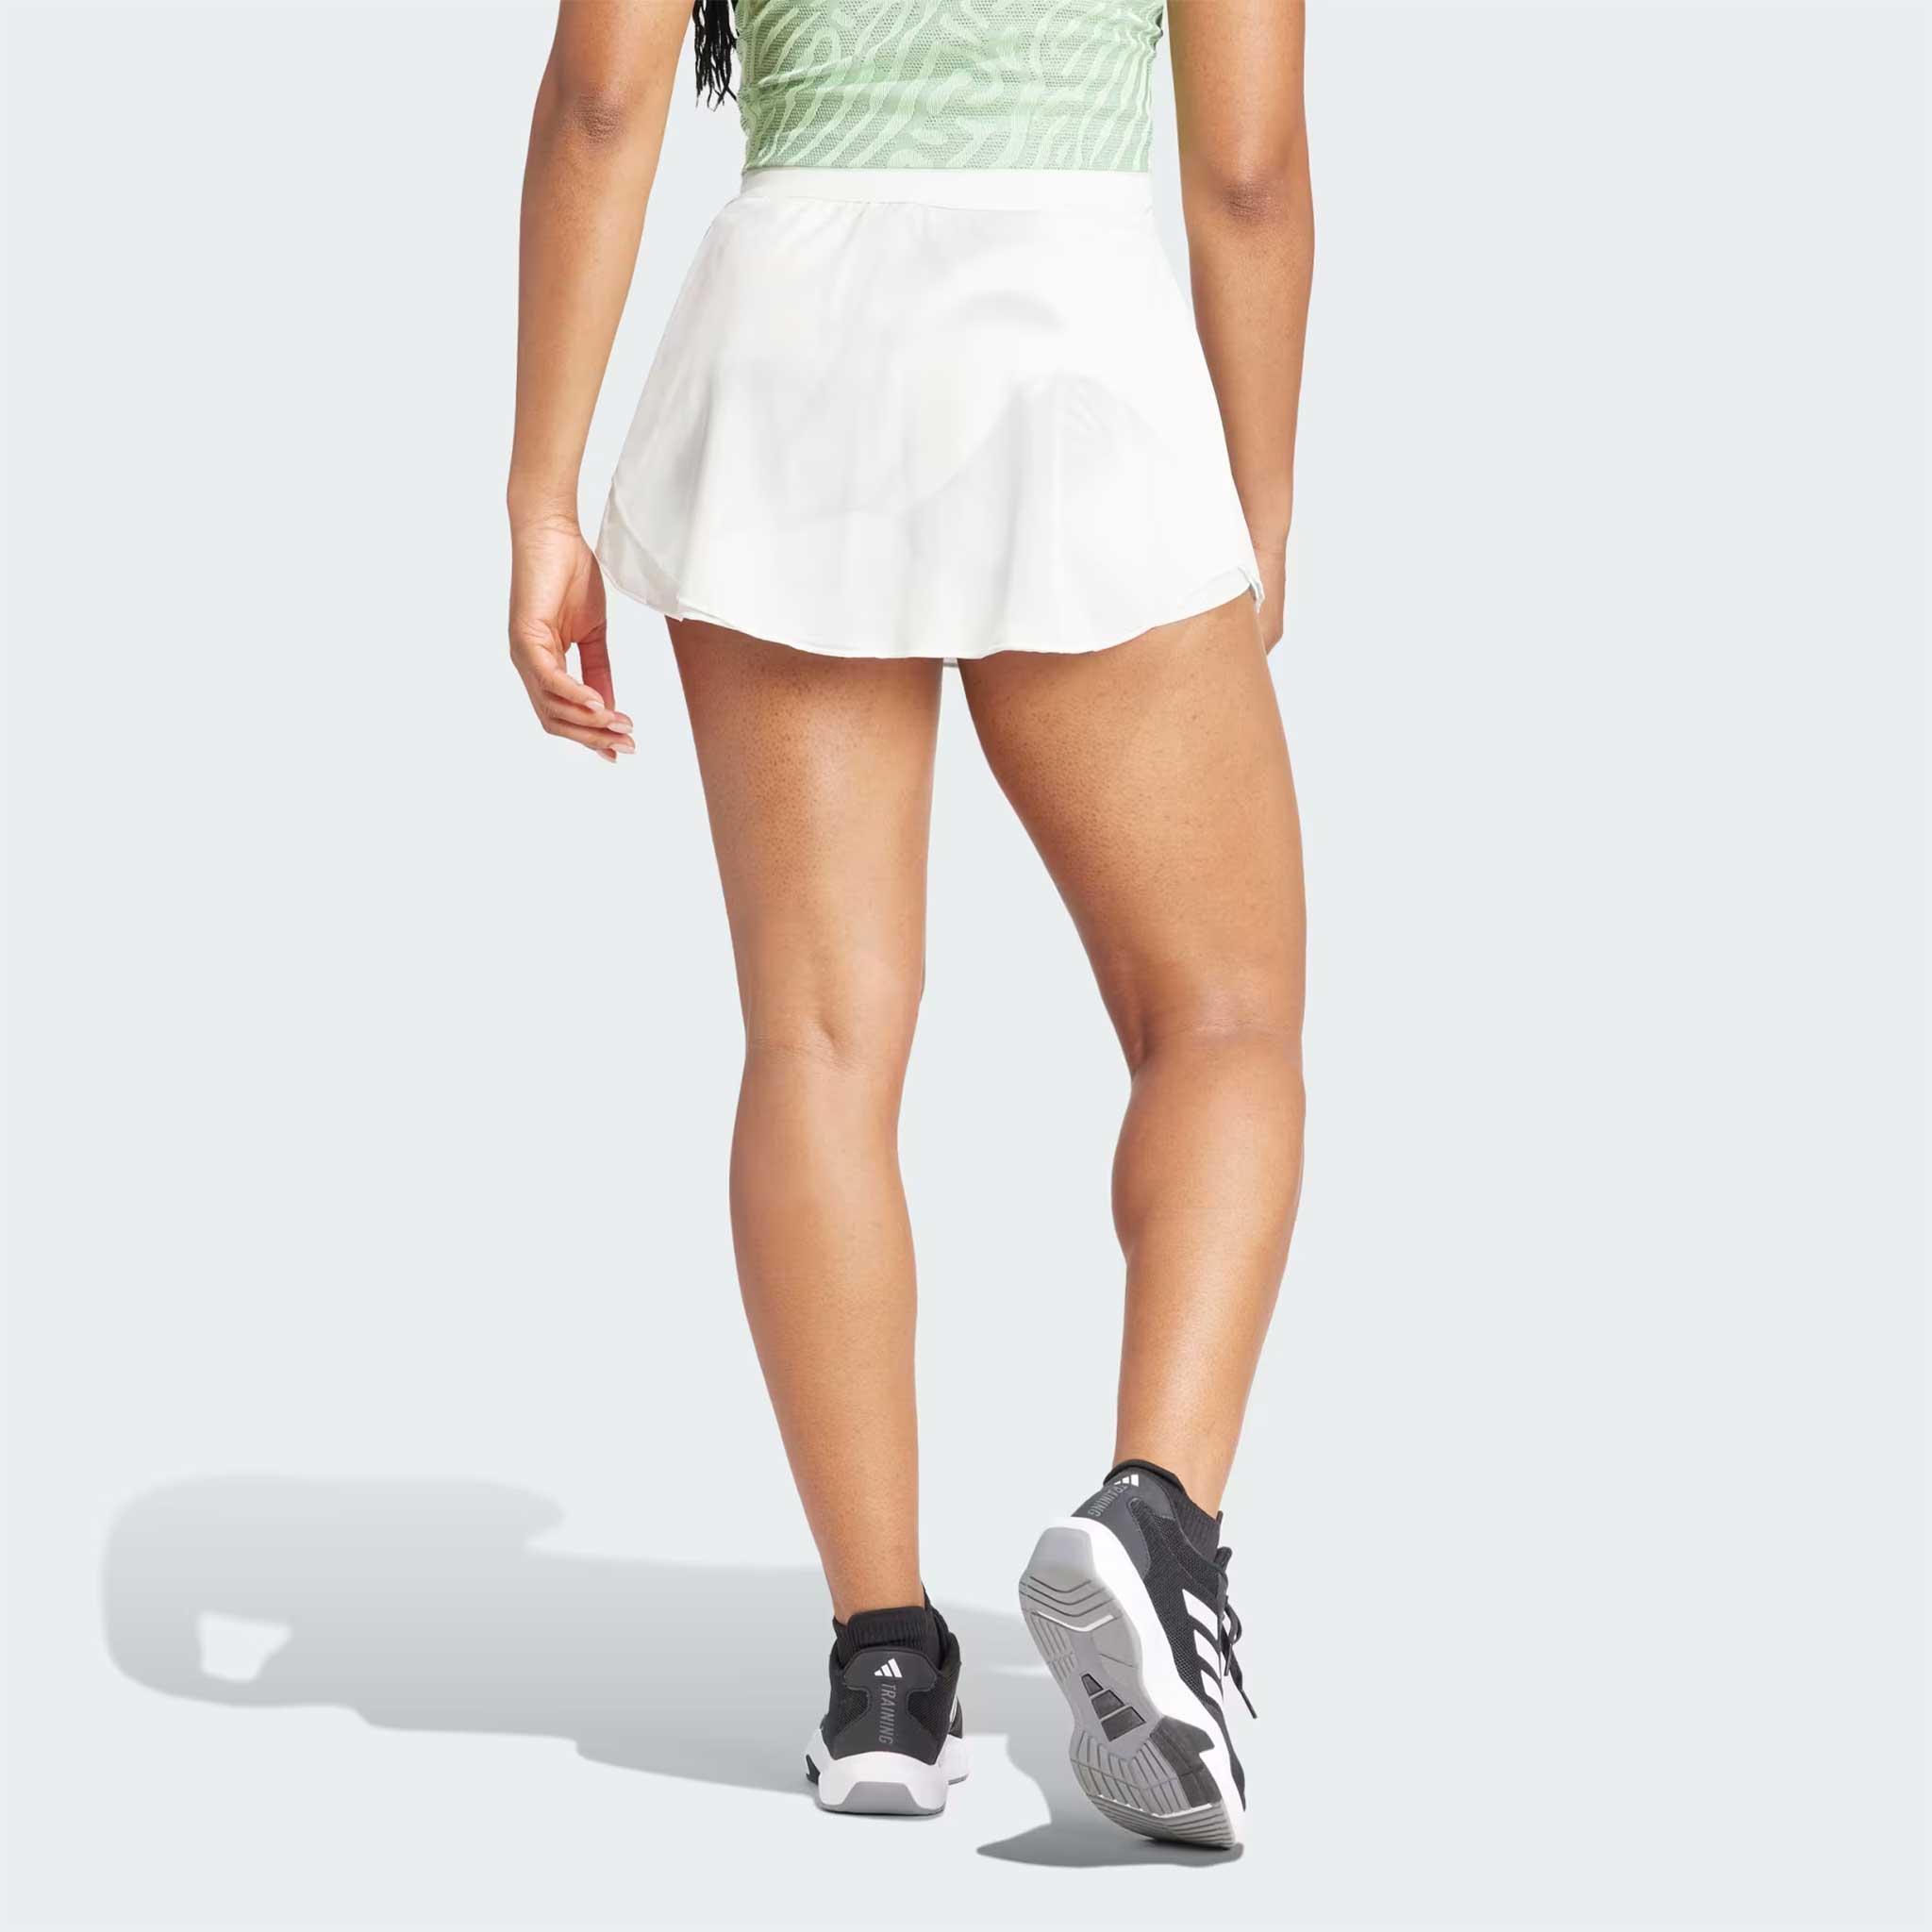 adidas Australian Open Skirt Pro Women's